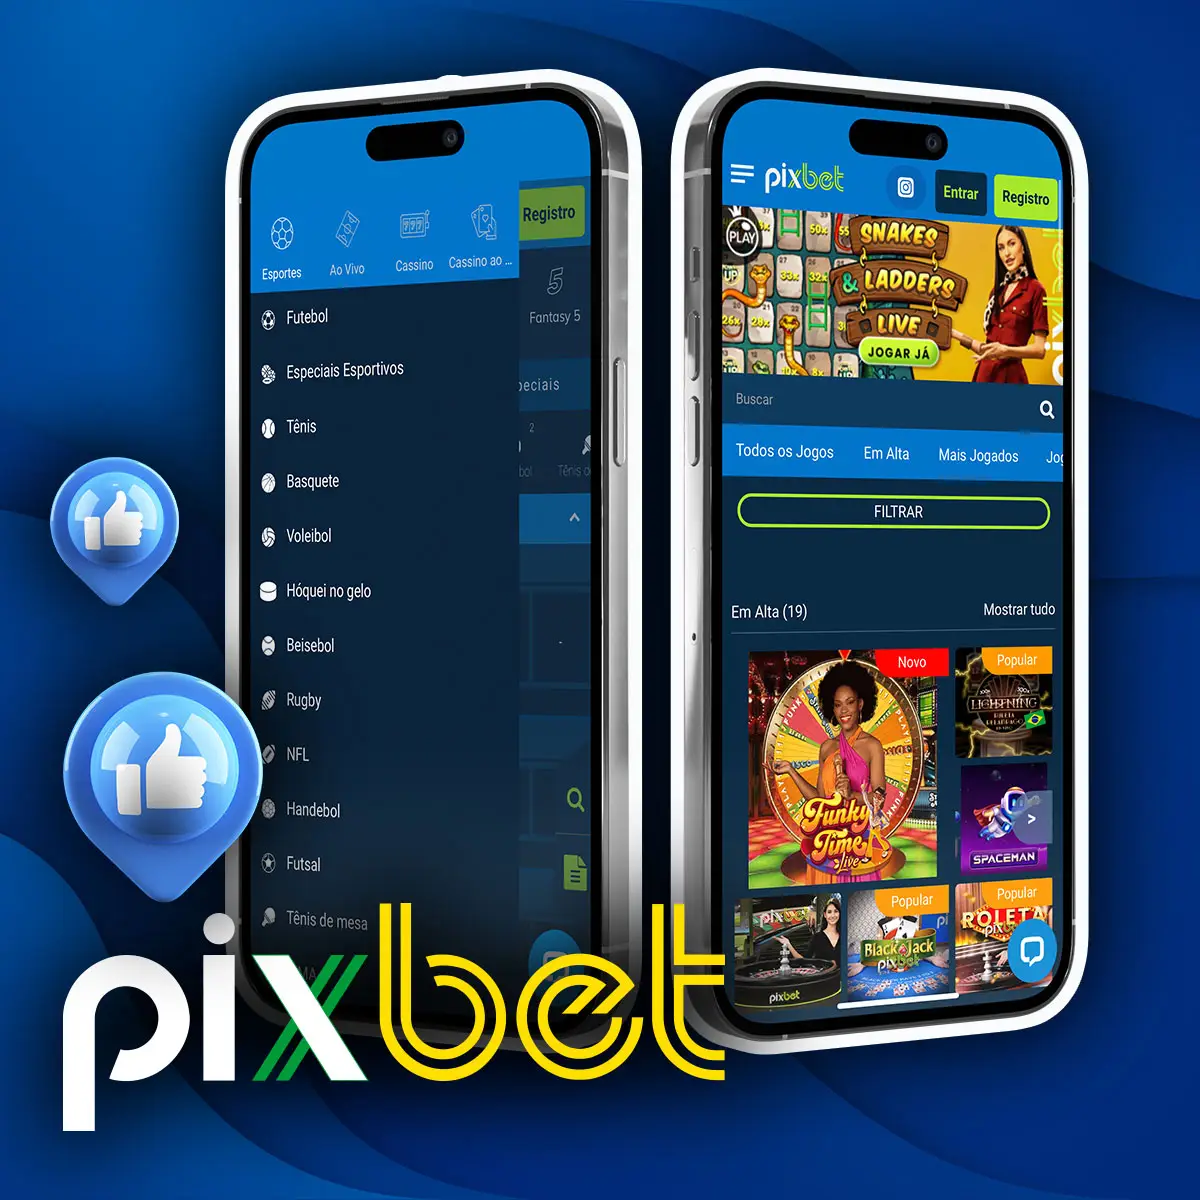 Principais características da aplicação oficial Pixbet